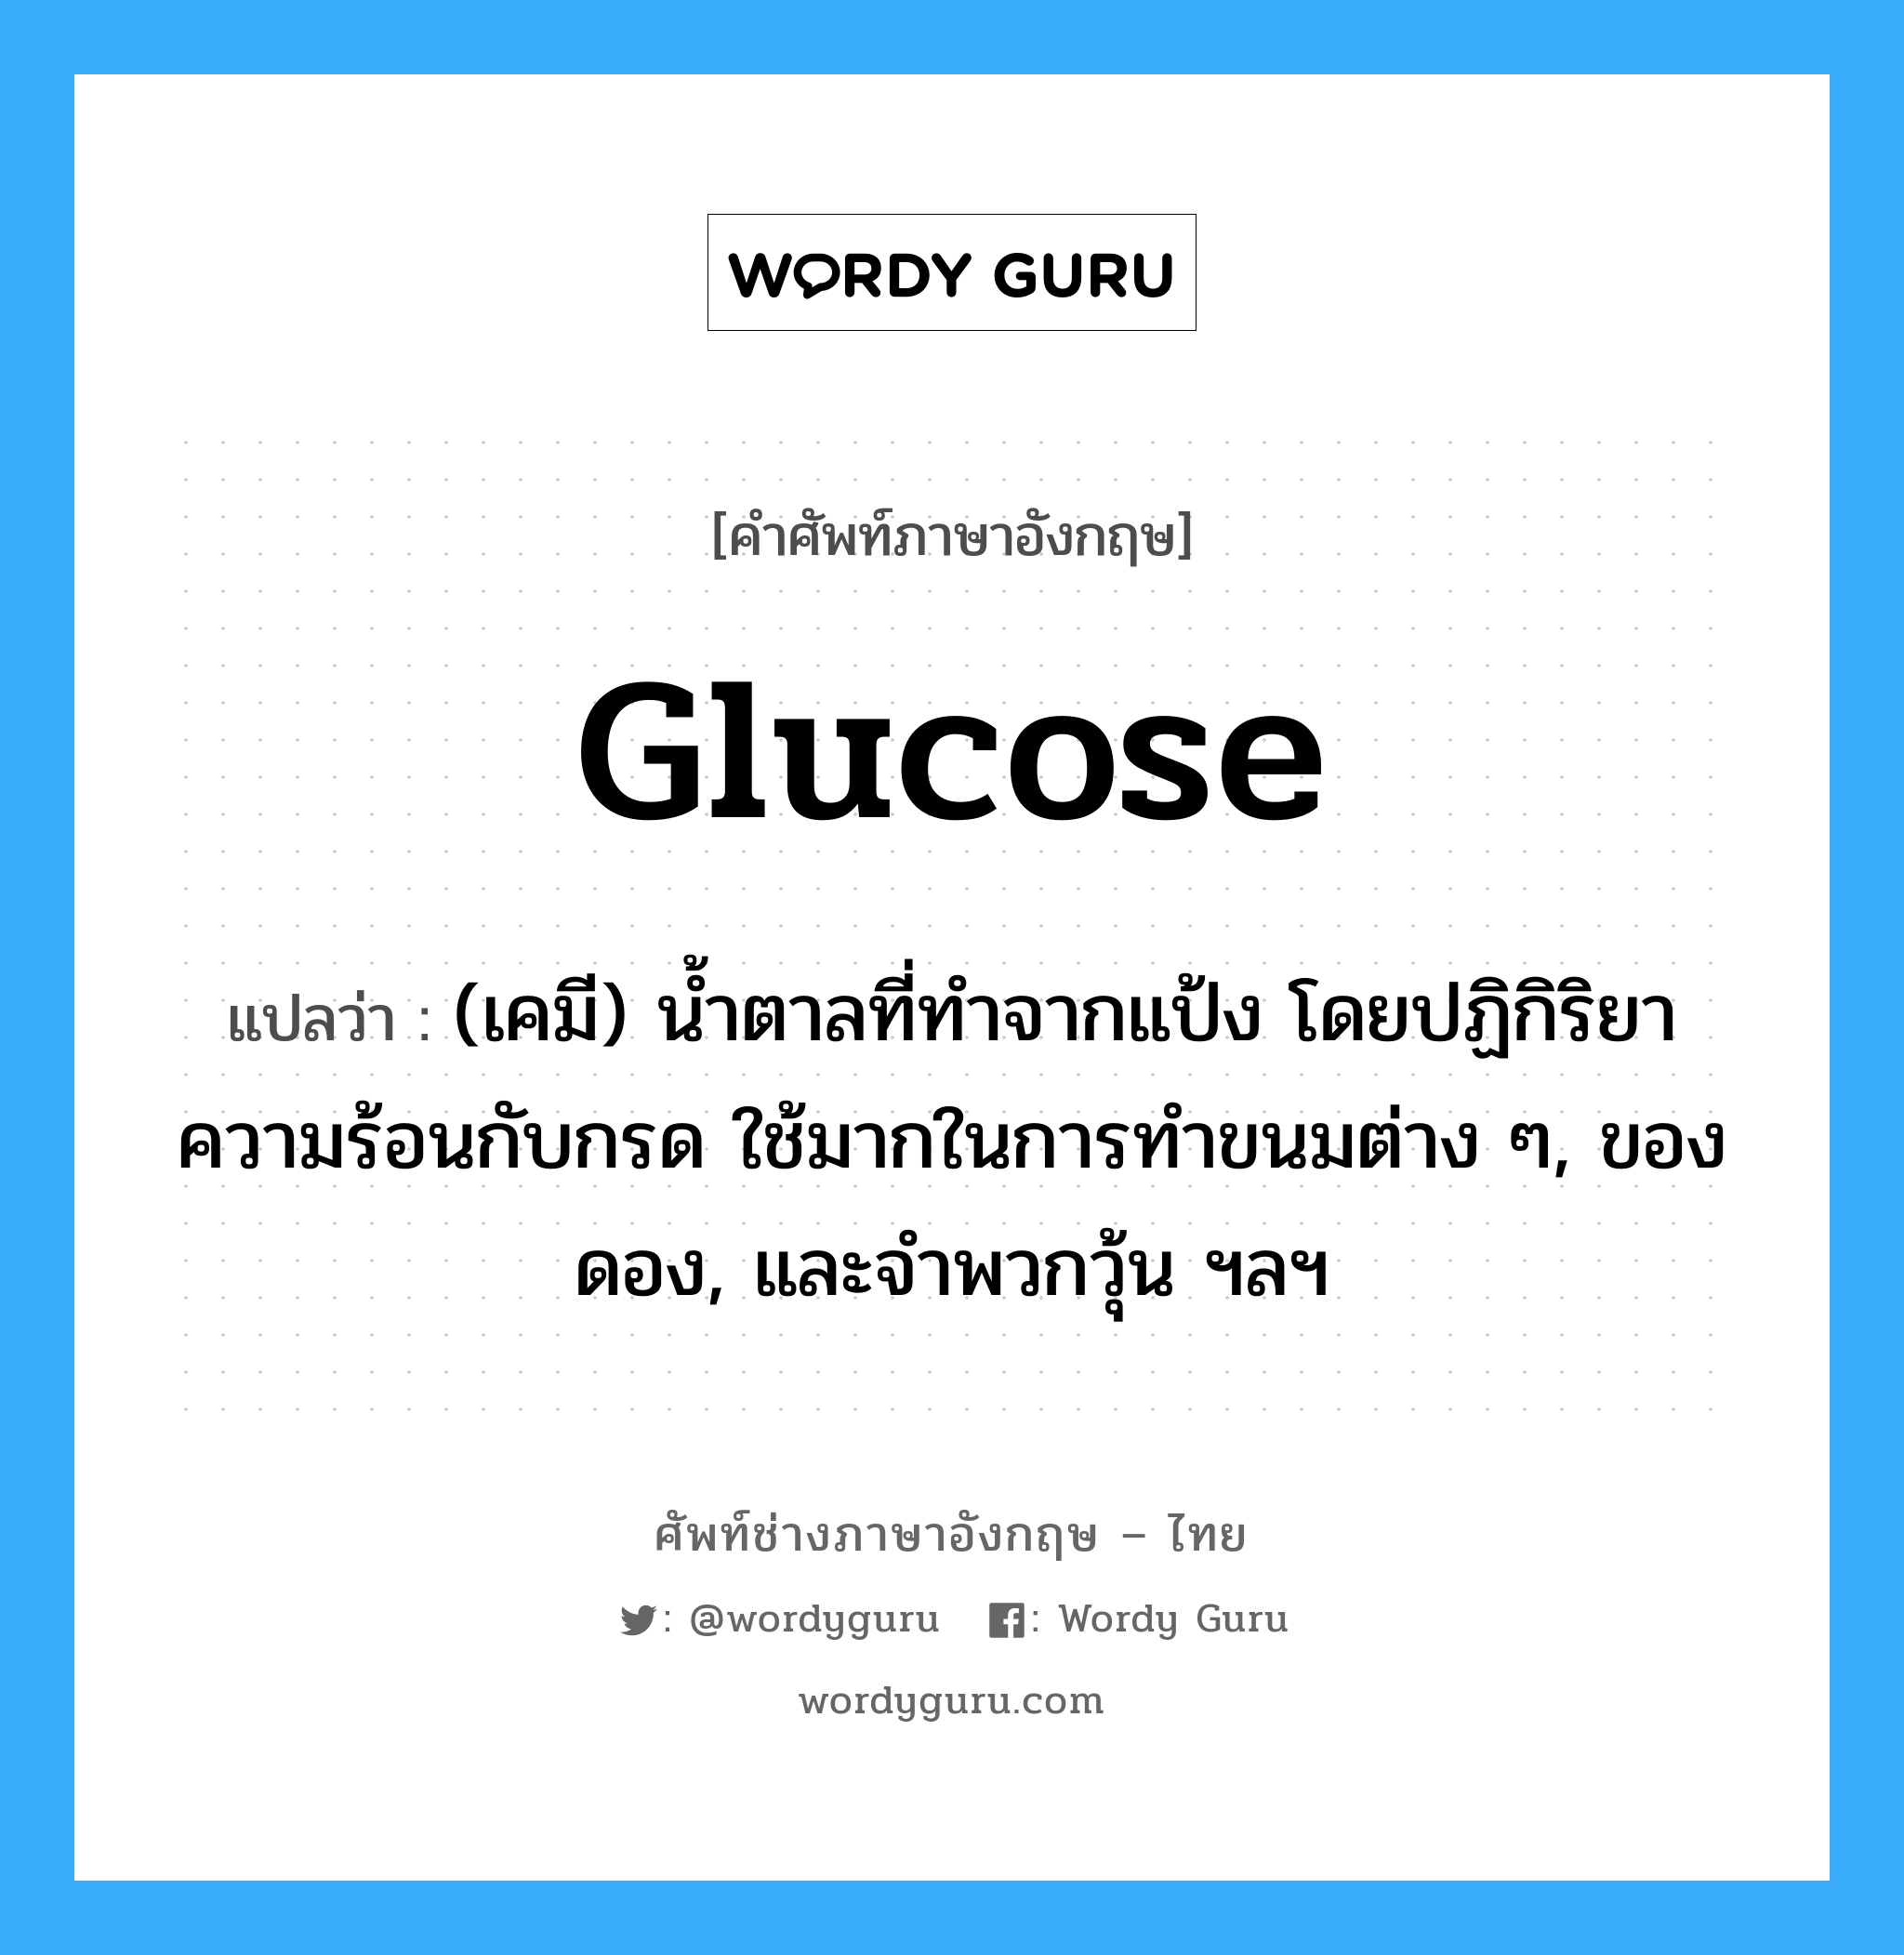 glucose แปลว่า?, คำศัพท์ช่างภาษาอังกฤษ - ไทย glucose คำศัพท์ภาษาอังกฤษ glucose แปลว่า (เคมี) น้ำตาลที่ทำจากแป้ง โดยปฏิกิริยาความร้อนกับกรด ใช้มากในการทำขนมต่าง ๆ, ของดอง, และจำพวกวุ้น ฯลฯ